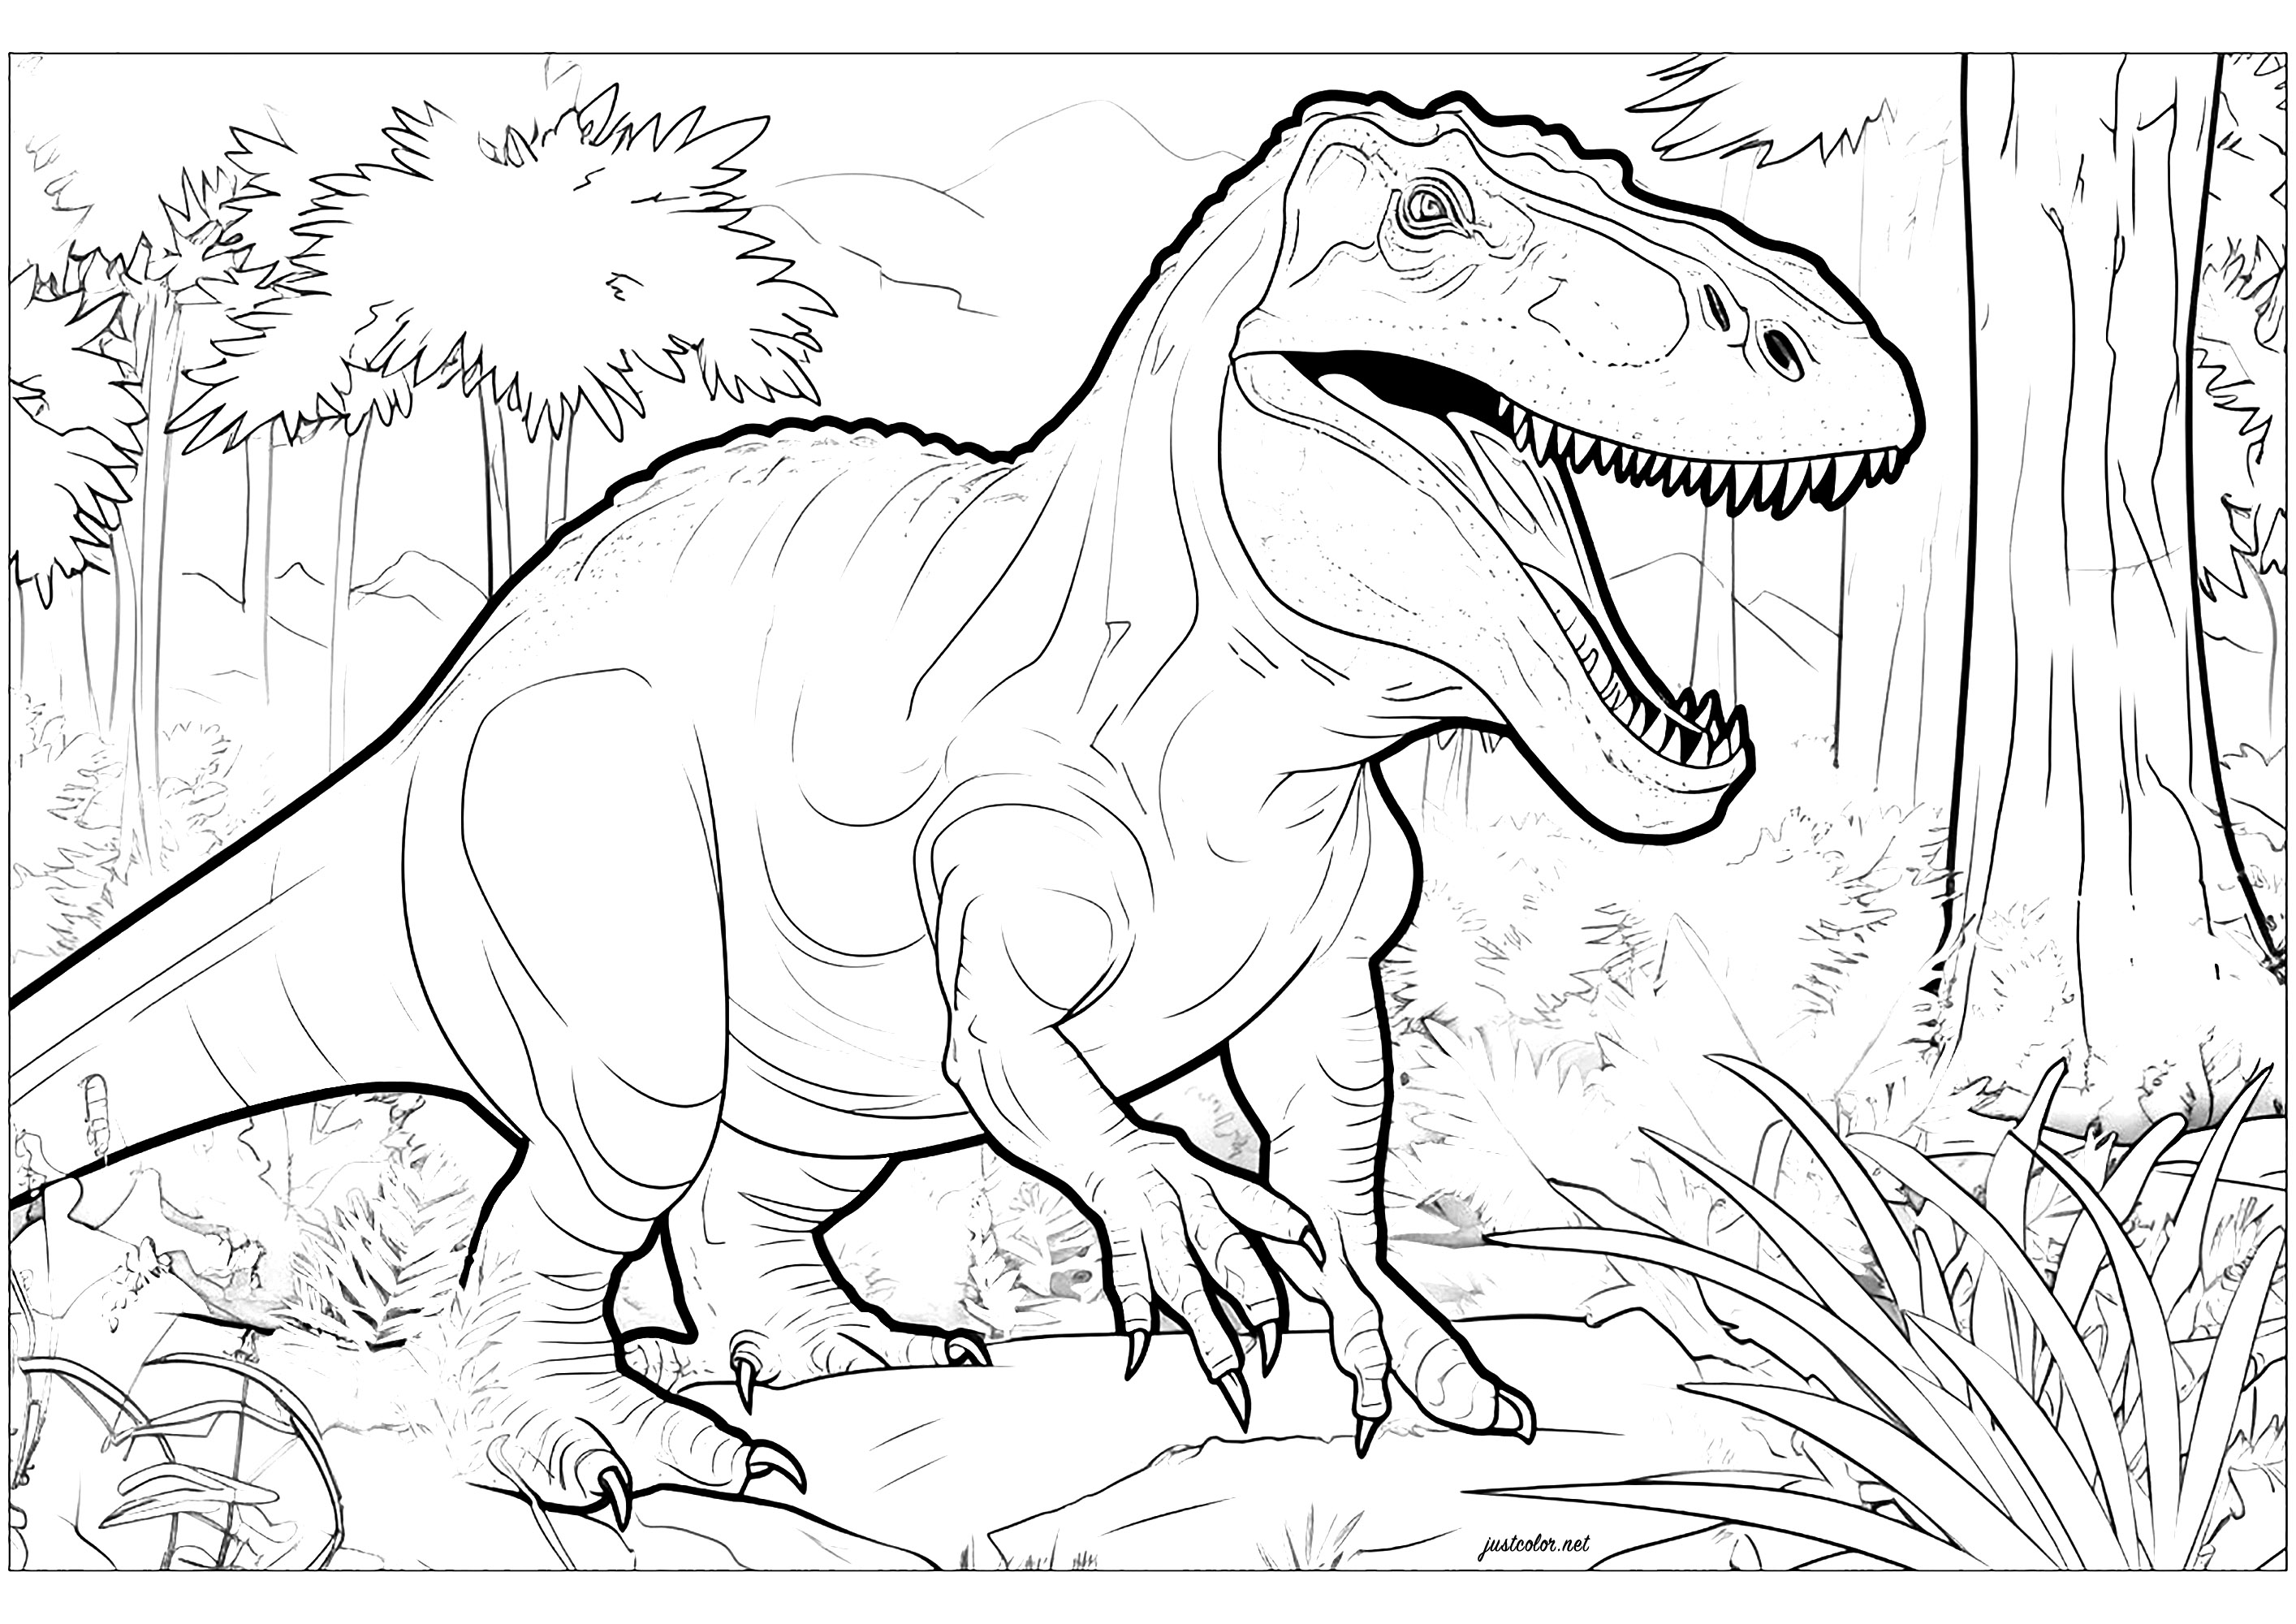 Tiranosaurio en su entorno natural. Colorido realista rico en detalles